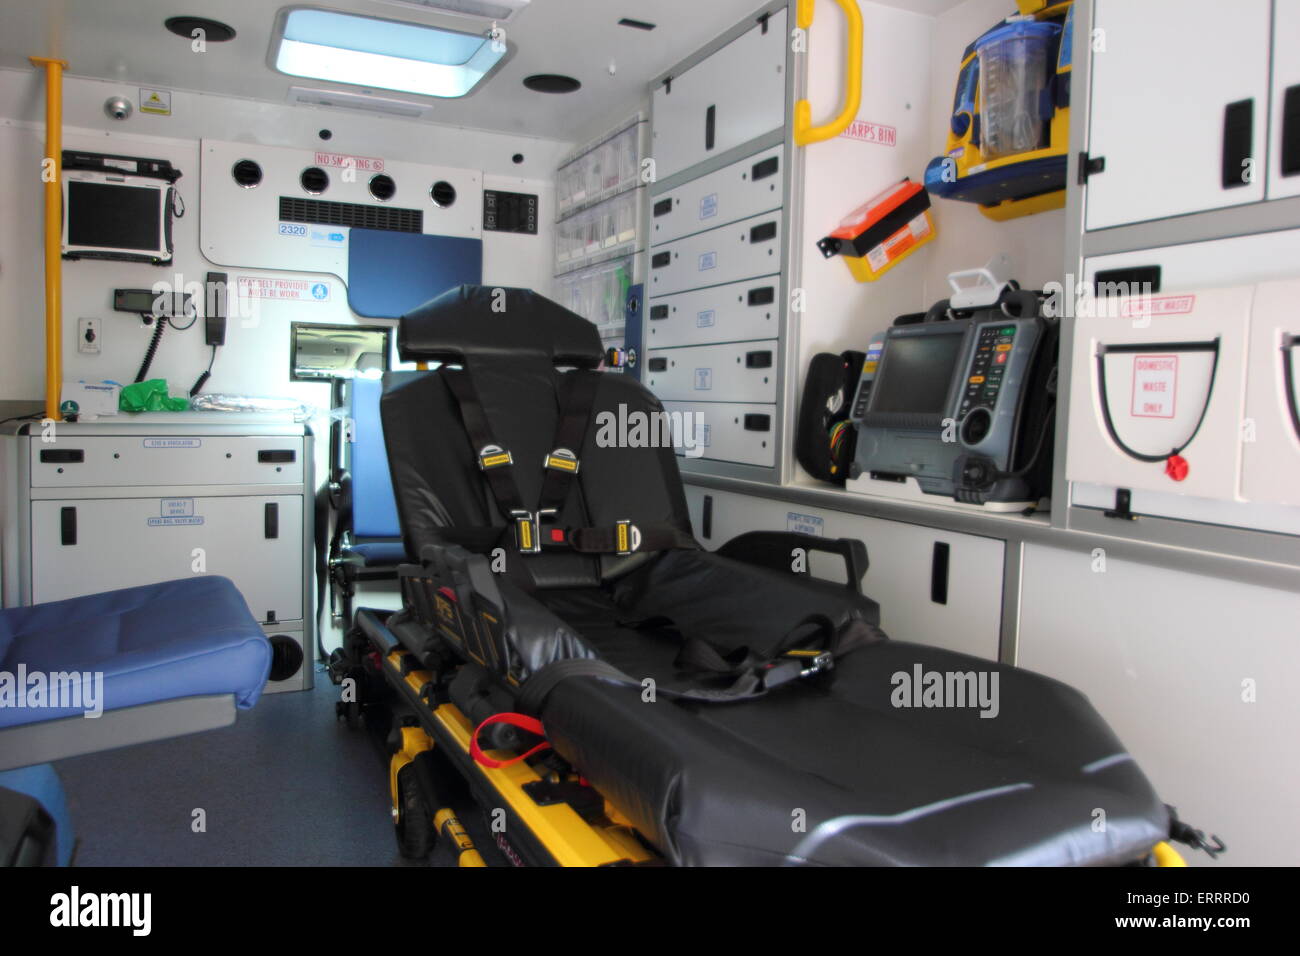 American Ambulances Inside